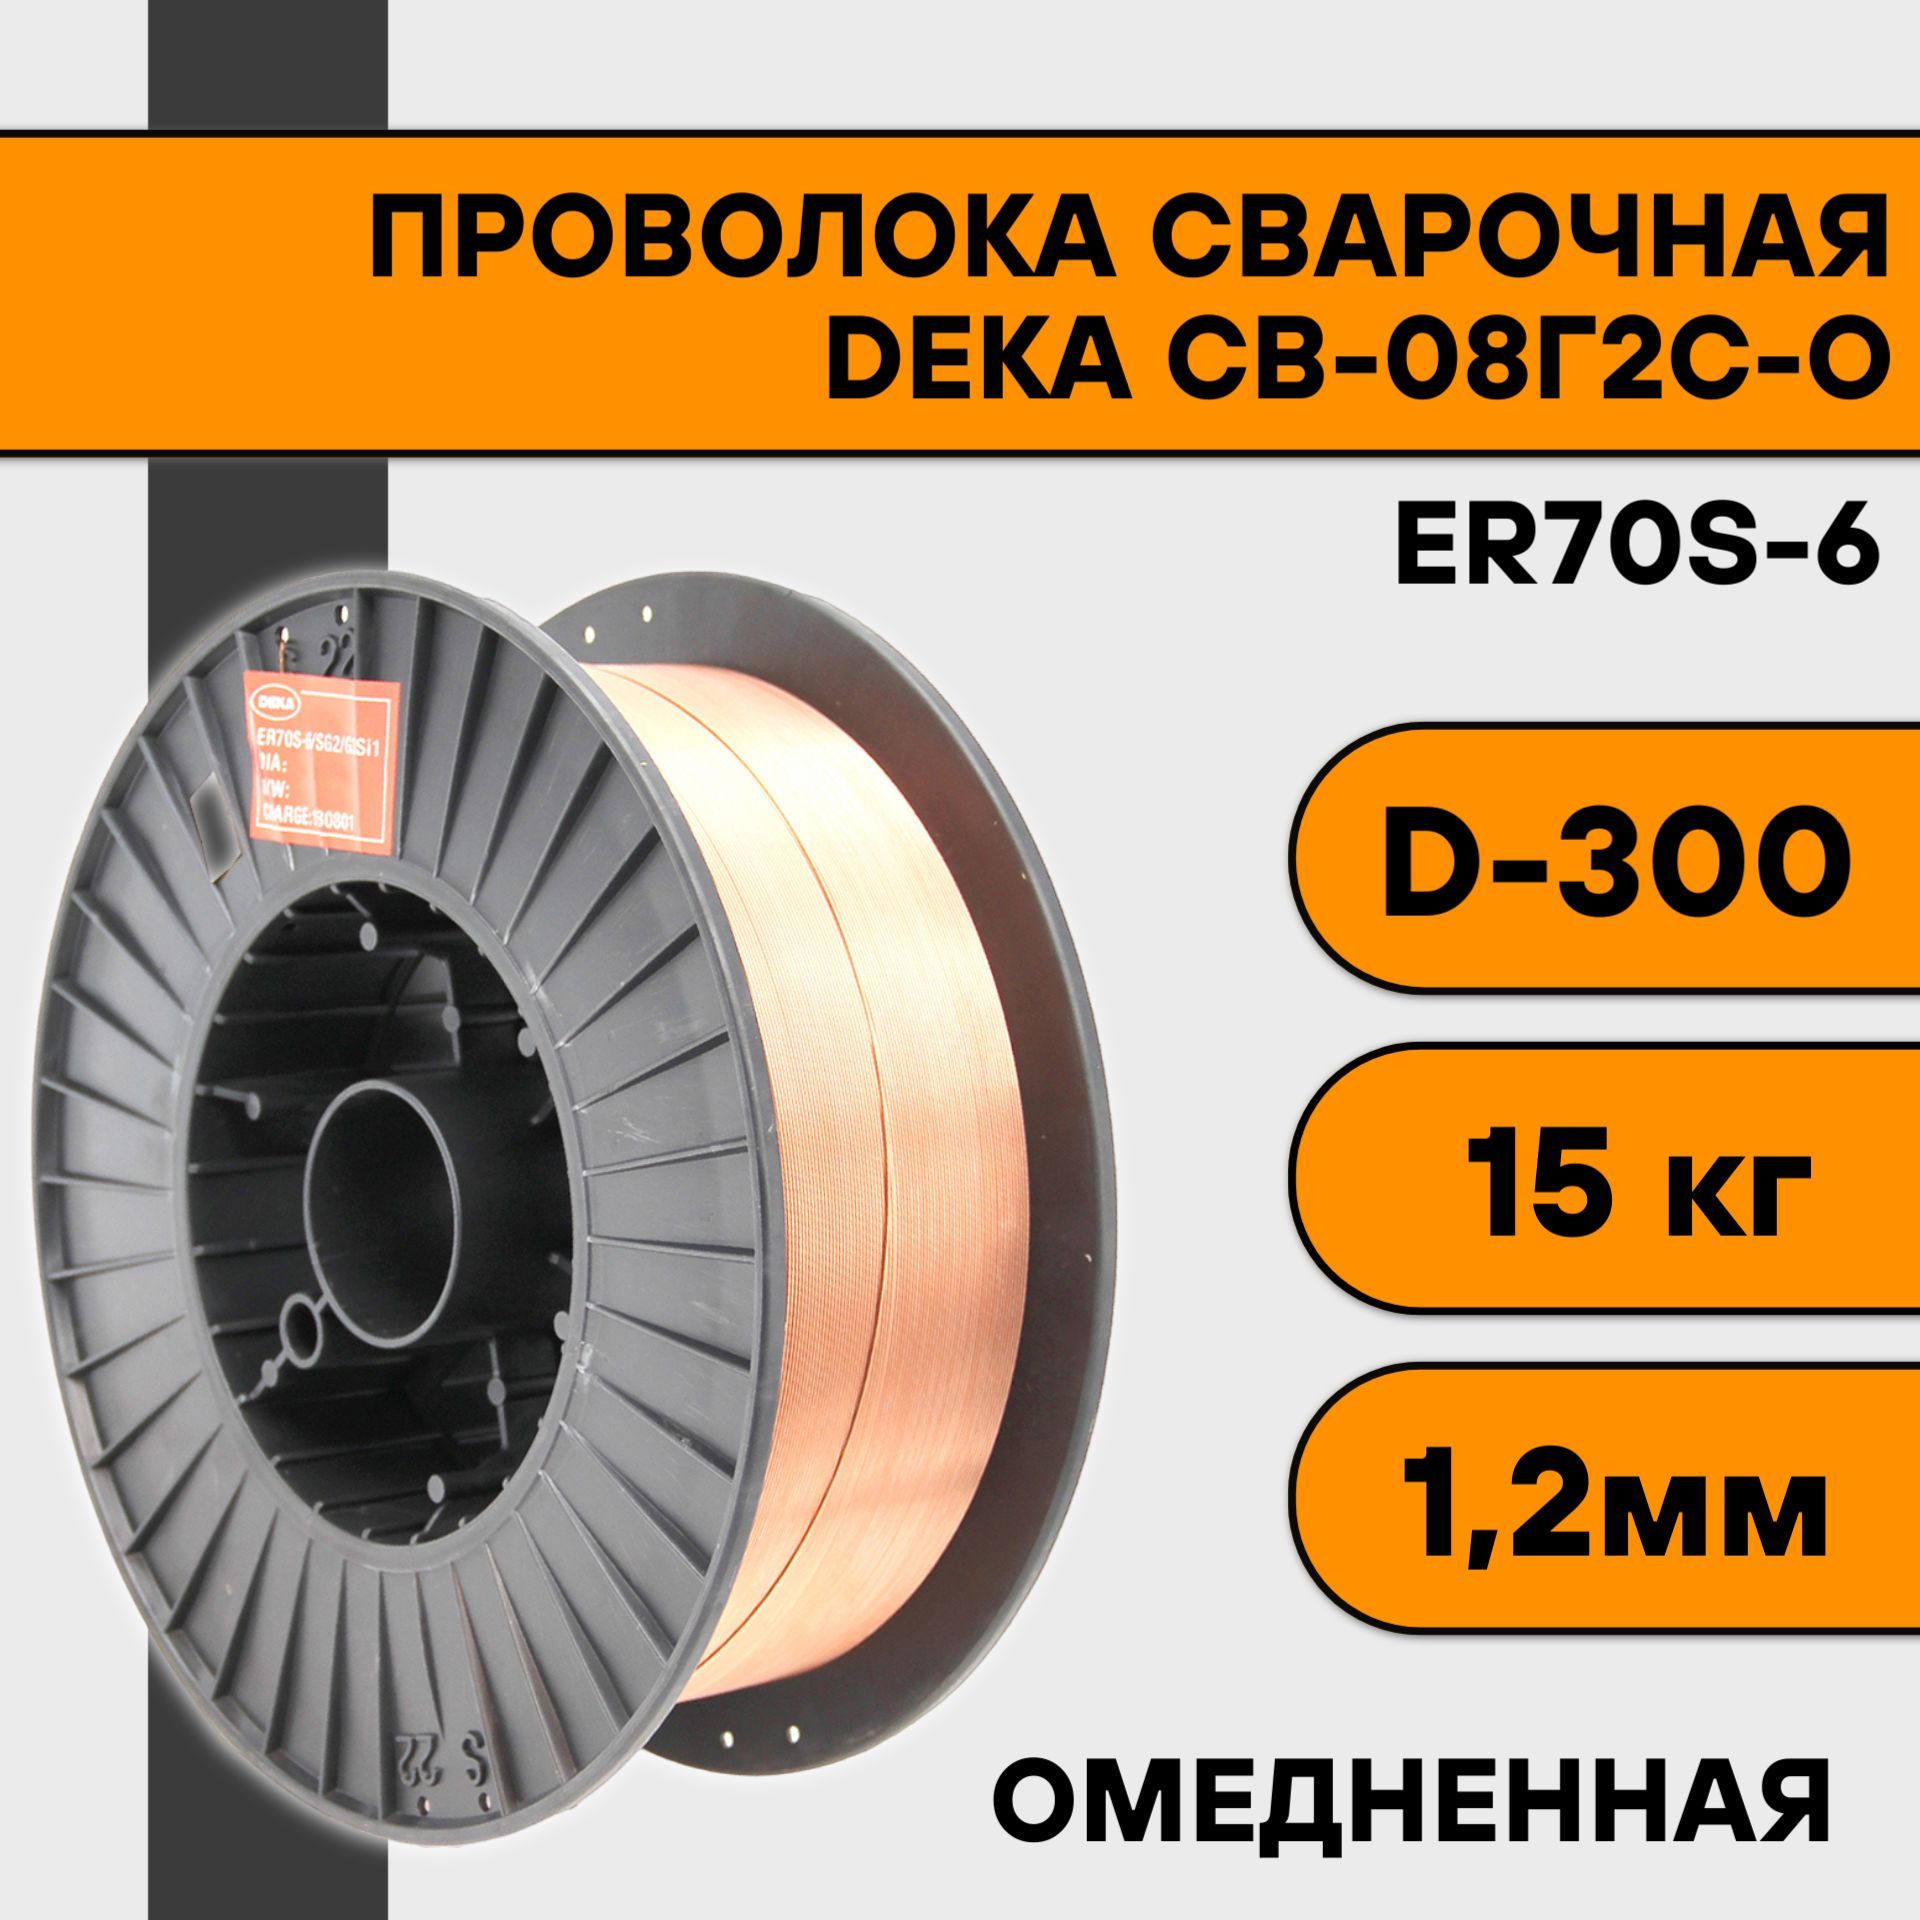 Сварочная проволока омедненная Deka ER70S-6 ф 1,2 мм (15 кг) D300 проволока сварочная омеднённая 1 0 мм 5 кг er70s 6